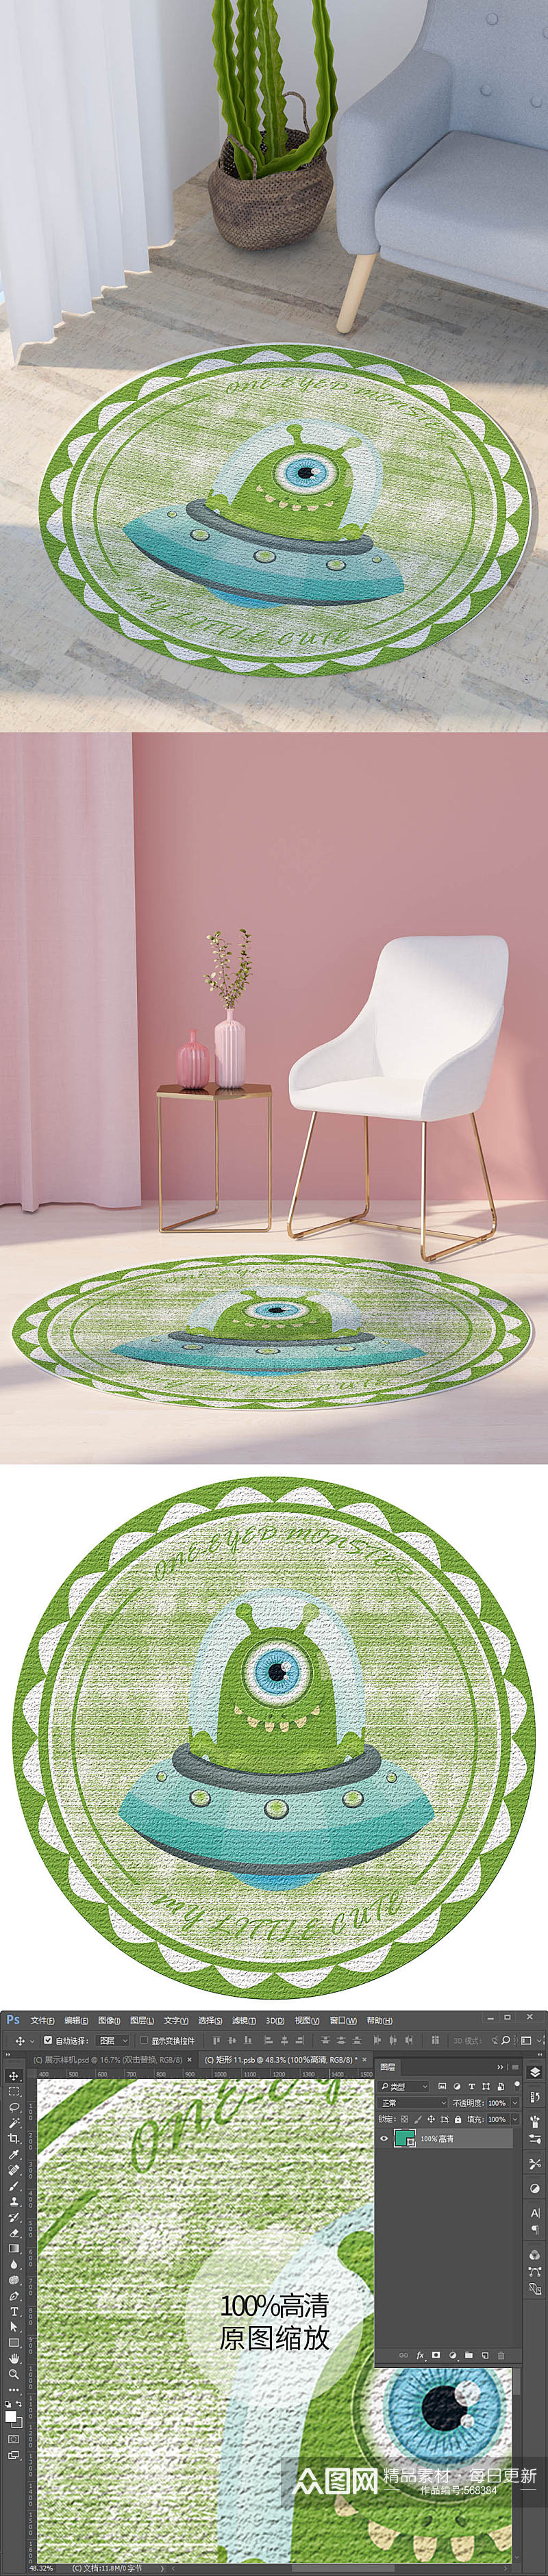 绿色可爱卡通小怪物飞碟儿童房圆形地毯图案素材